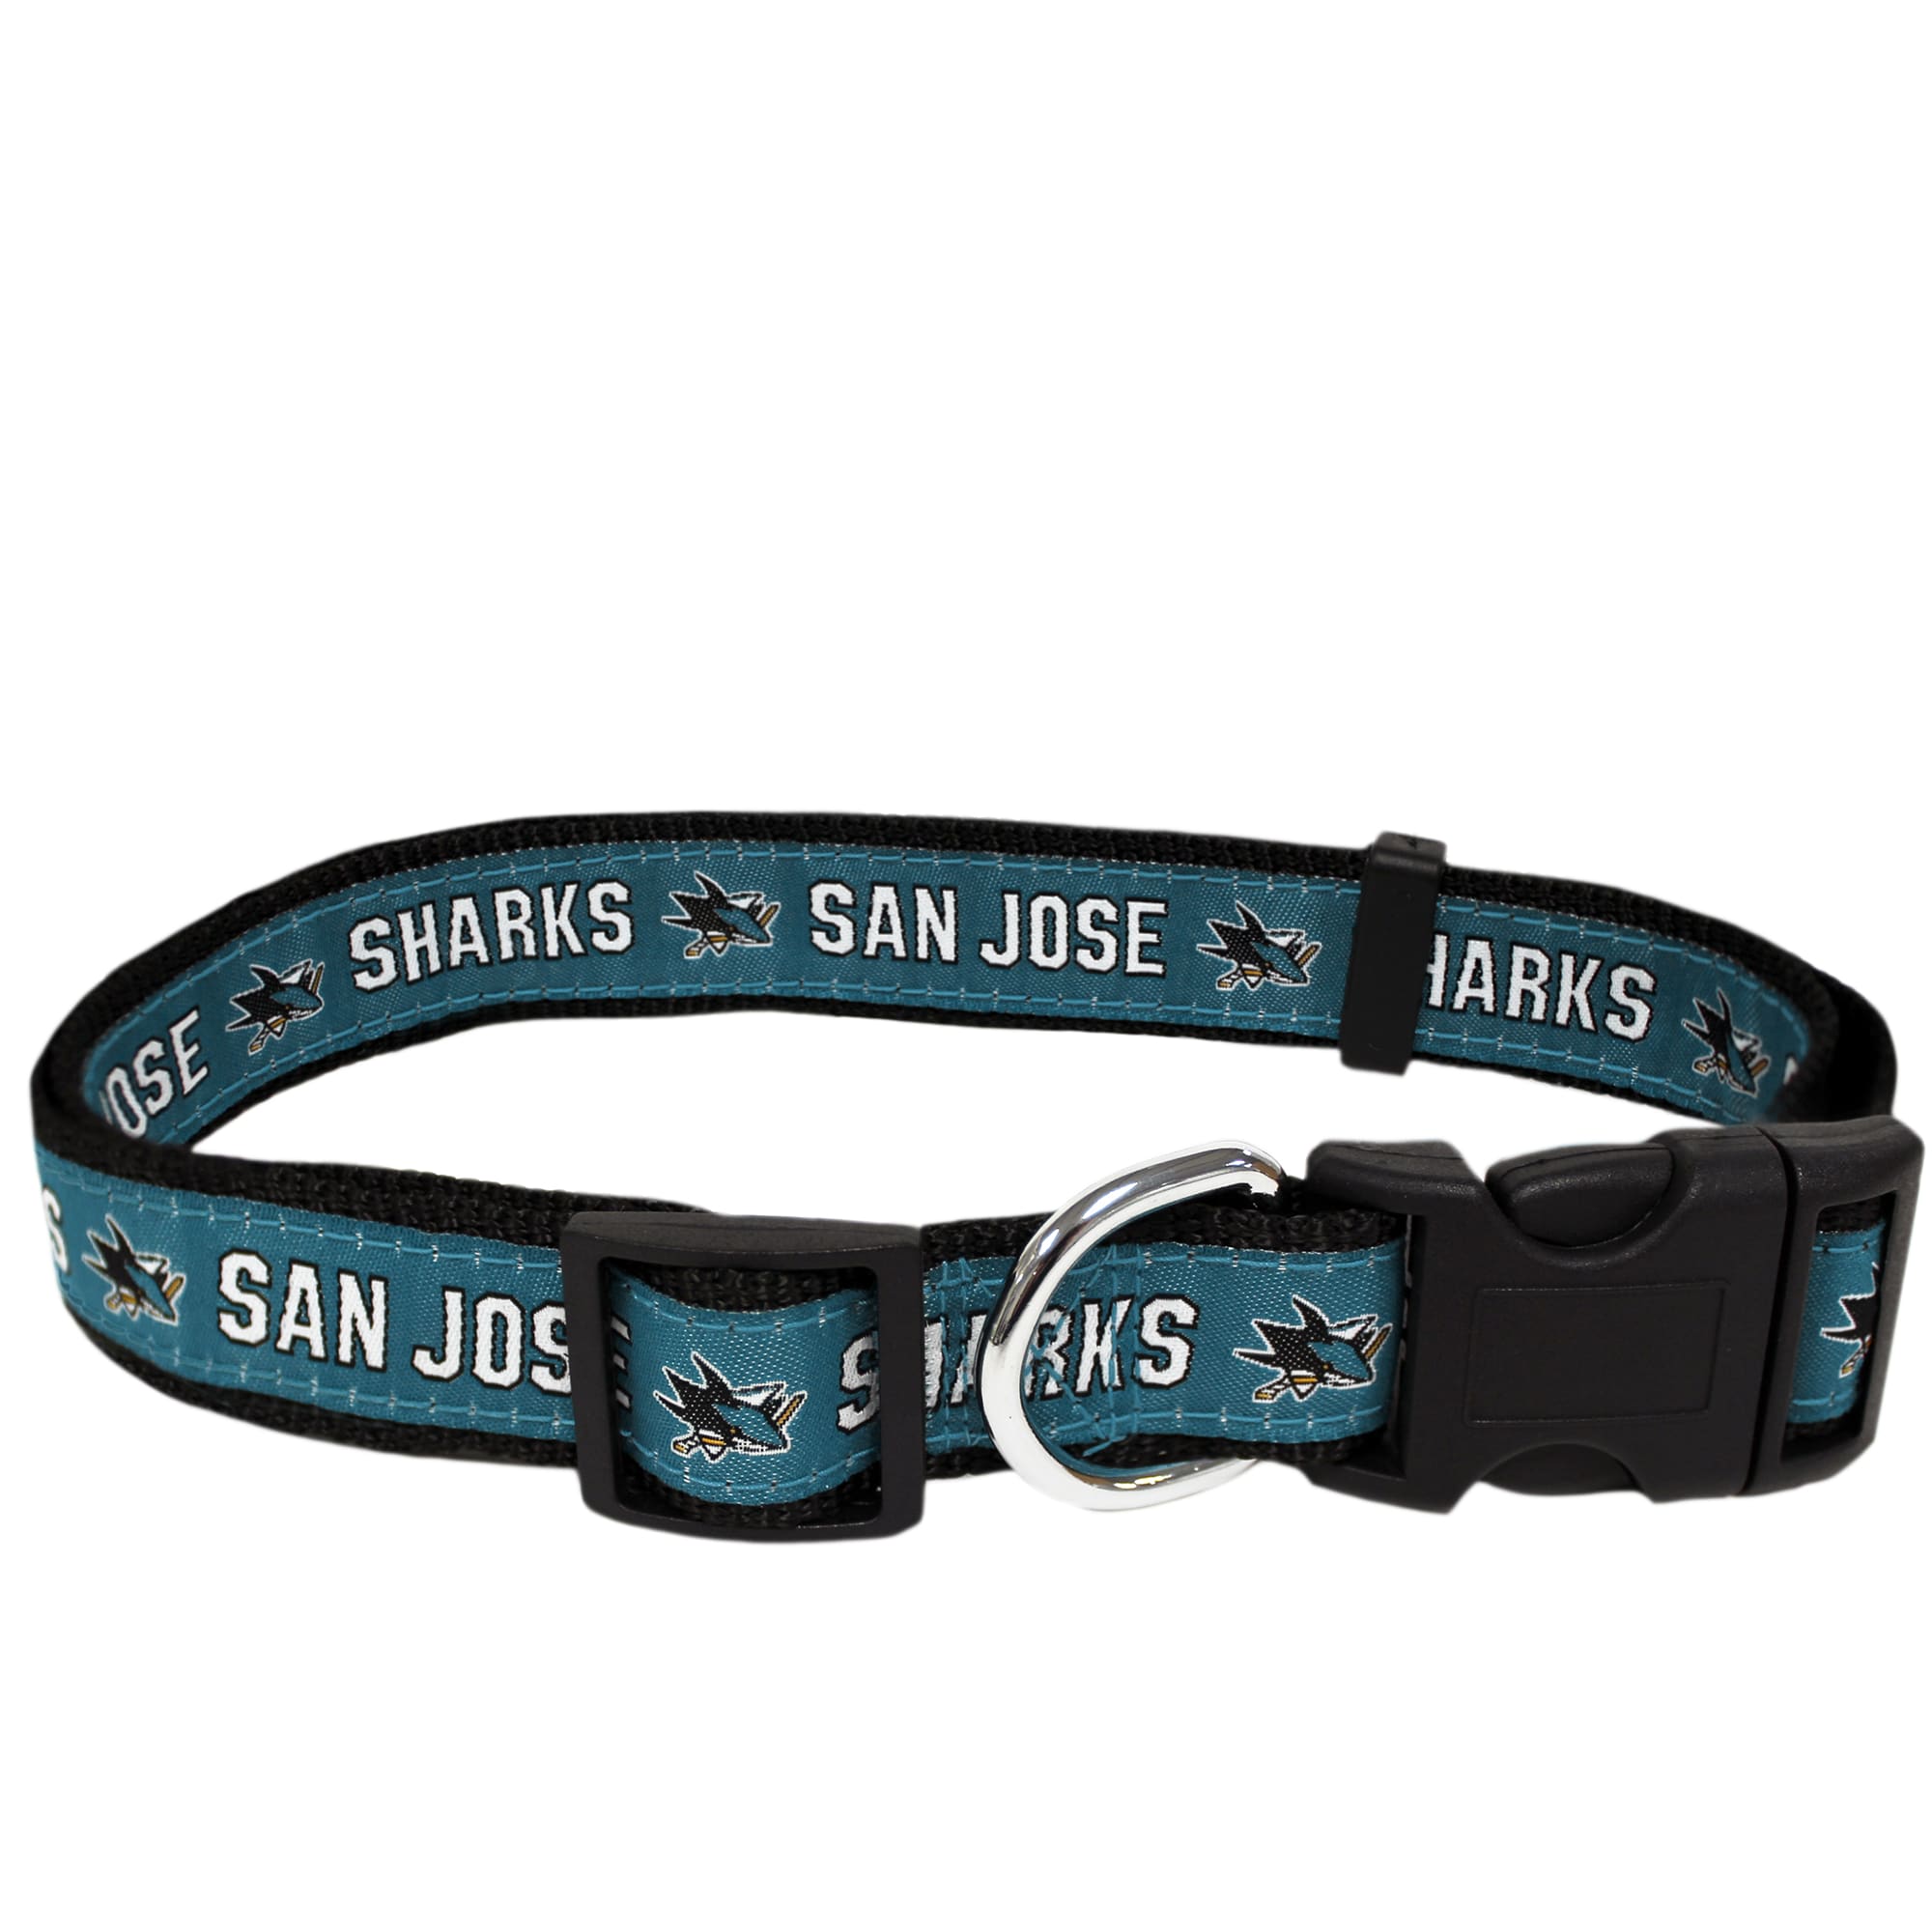 Photos - Collar / Harnesses Pets First San Jose Sharks Dog Collar, Large, Multi-Color SJS-3 